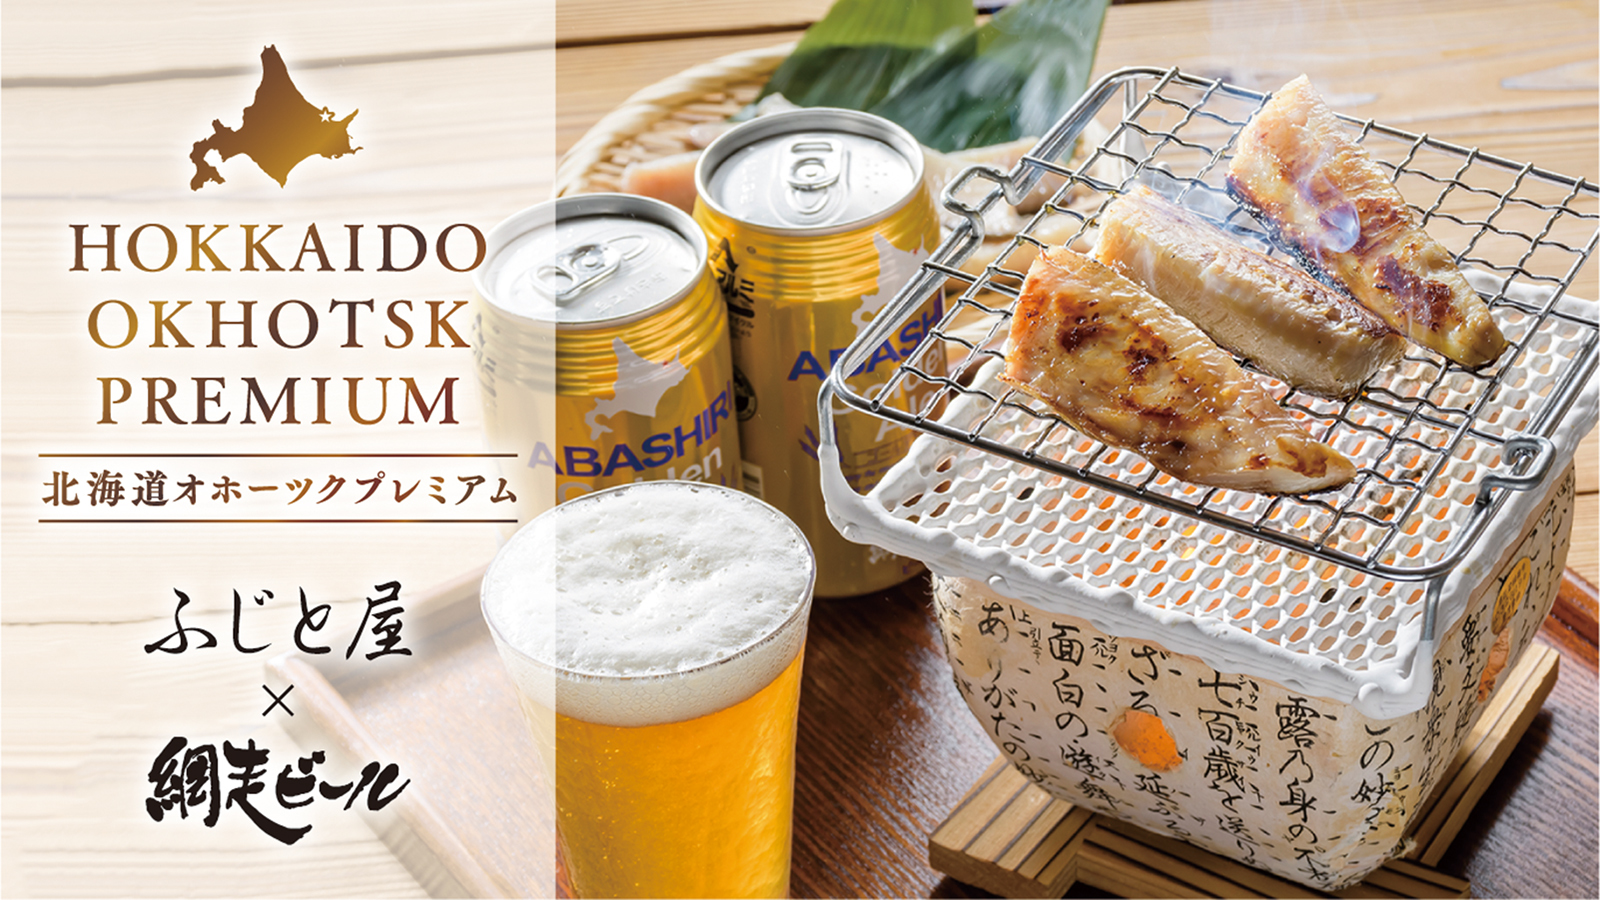 『北海道三大ほっけ』で知られる知床羅臼産のほっけと
網走ビールとのコラボ商品がMakuakeで
2月18日(金)18時から先行予約販売を開始！